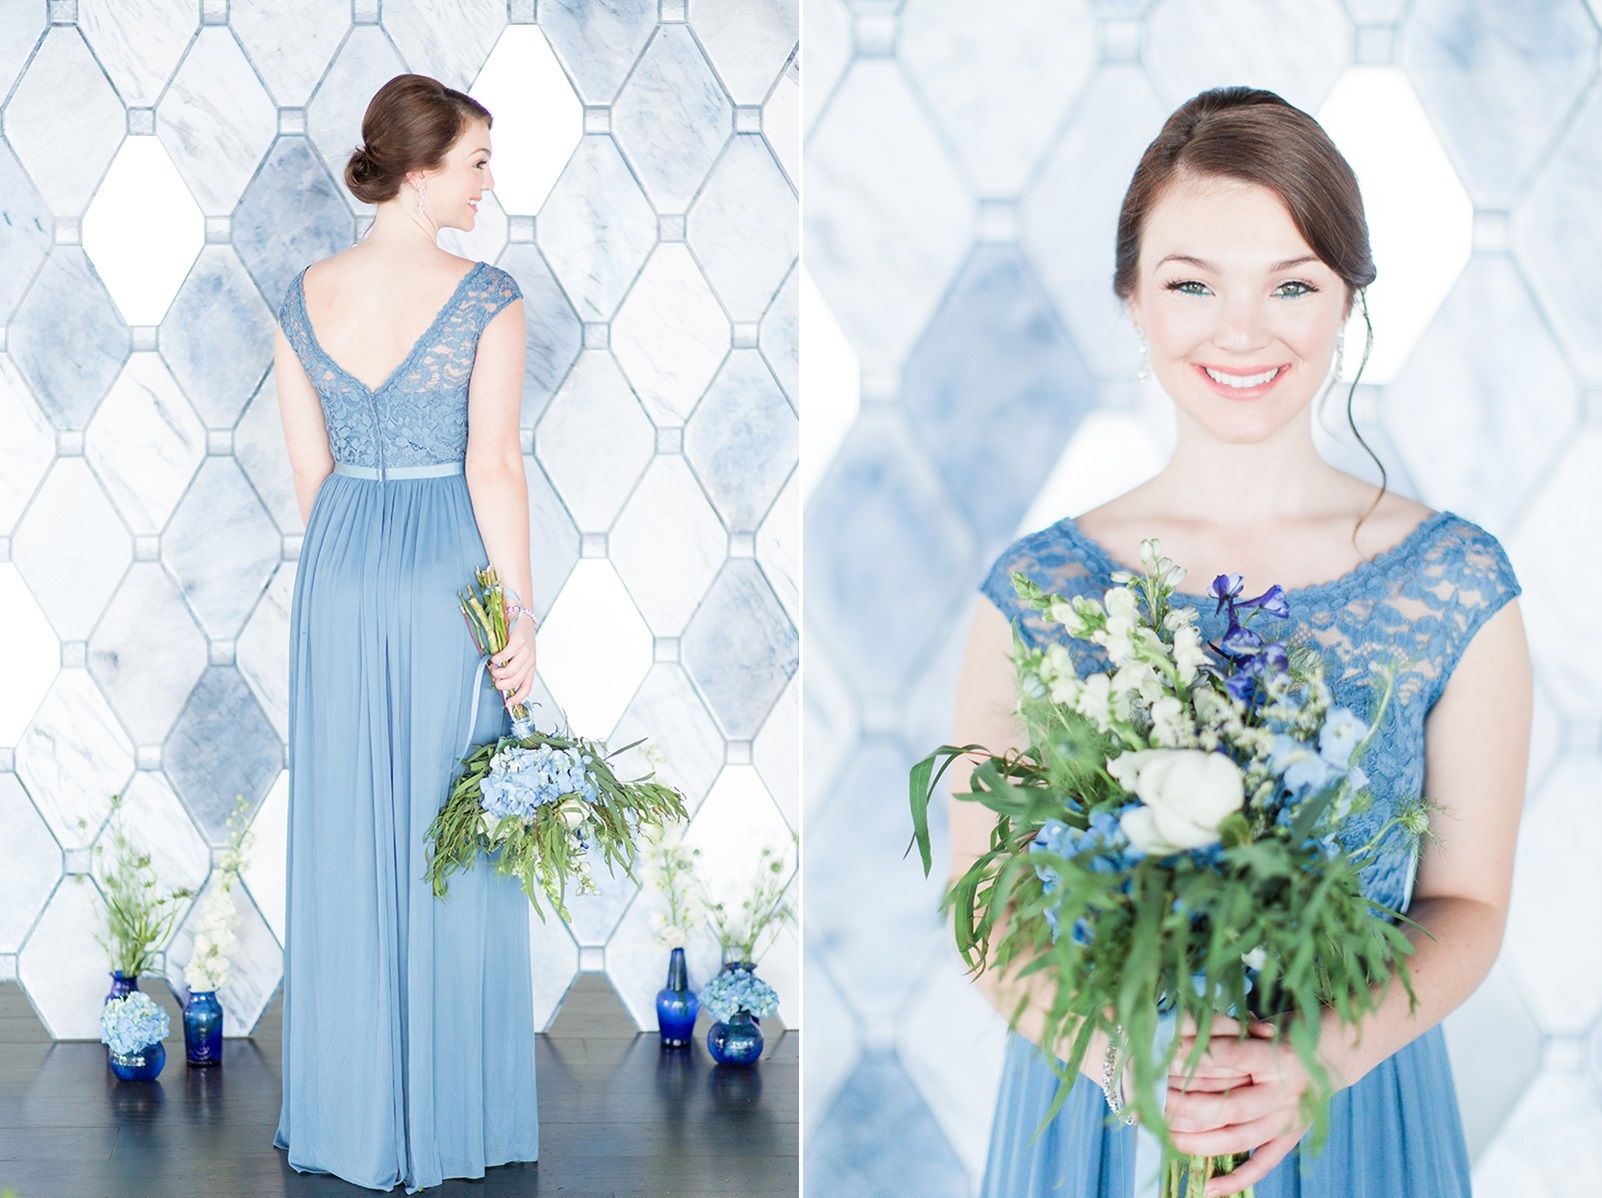 Blue bridesmaids dress from David's Bridal